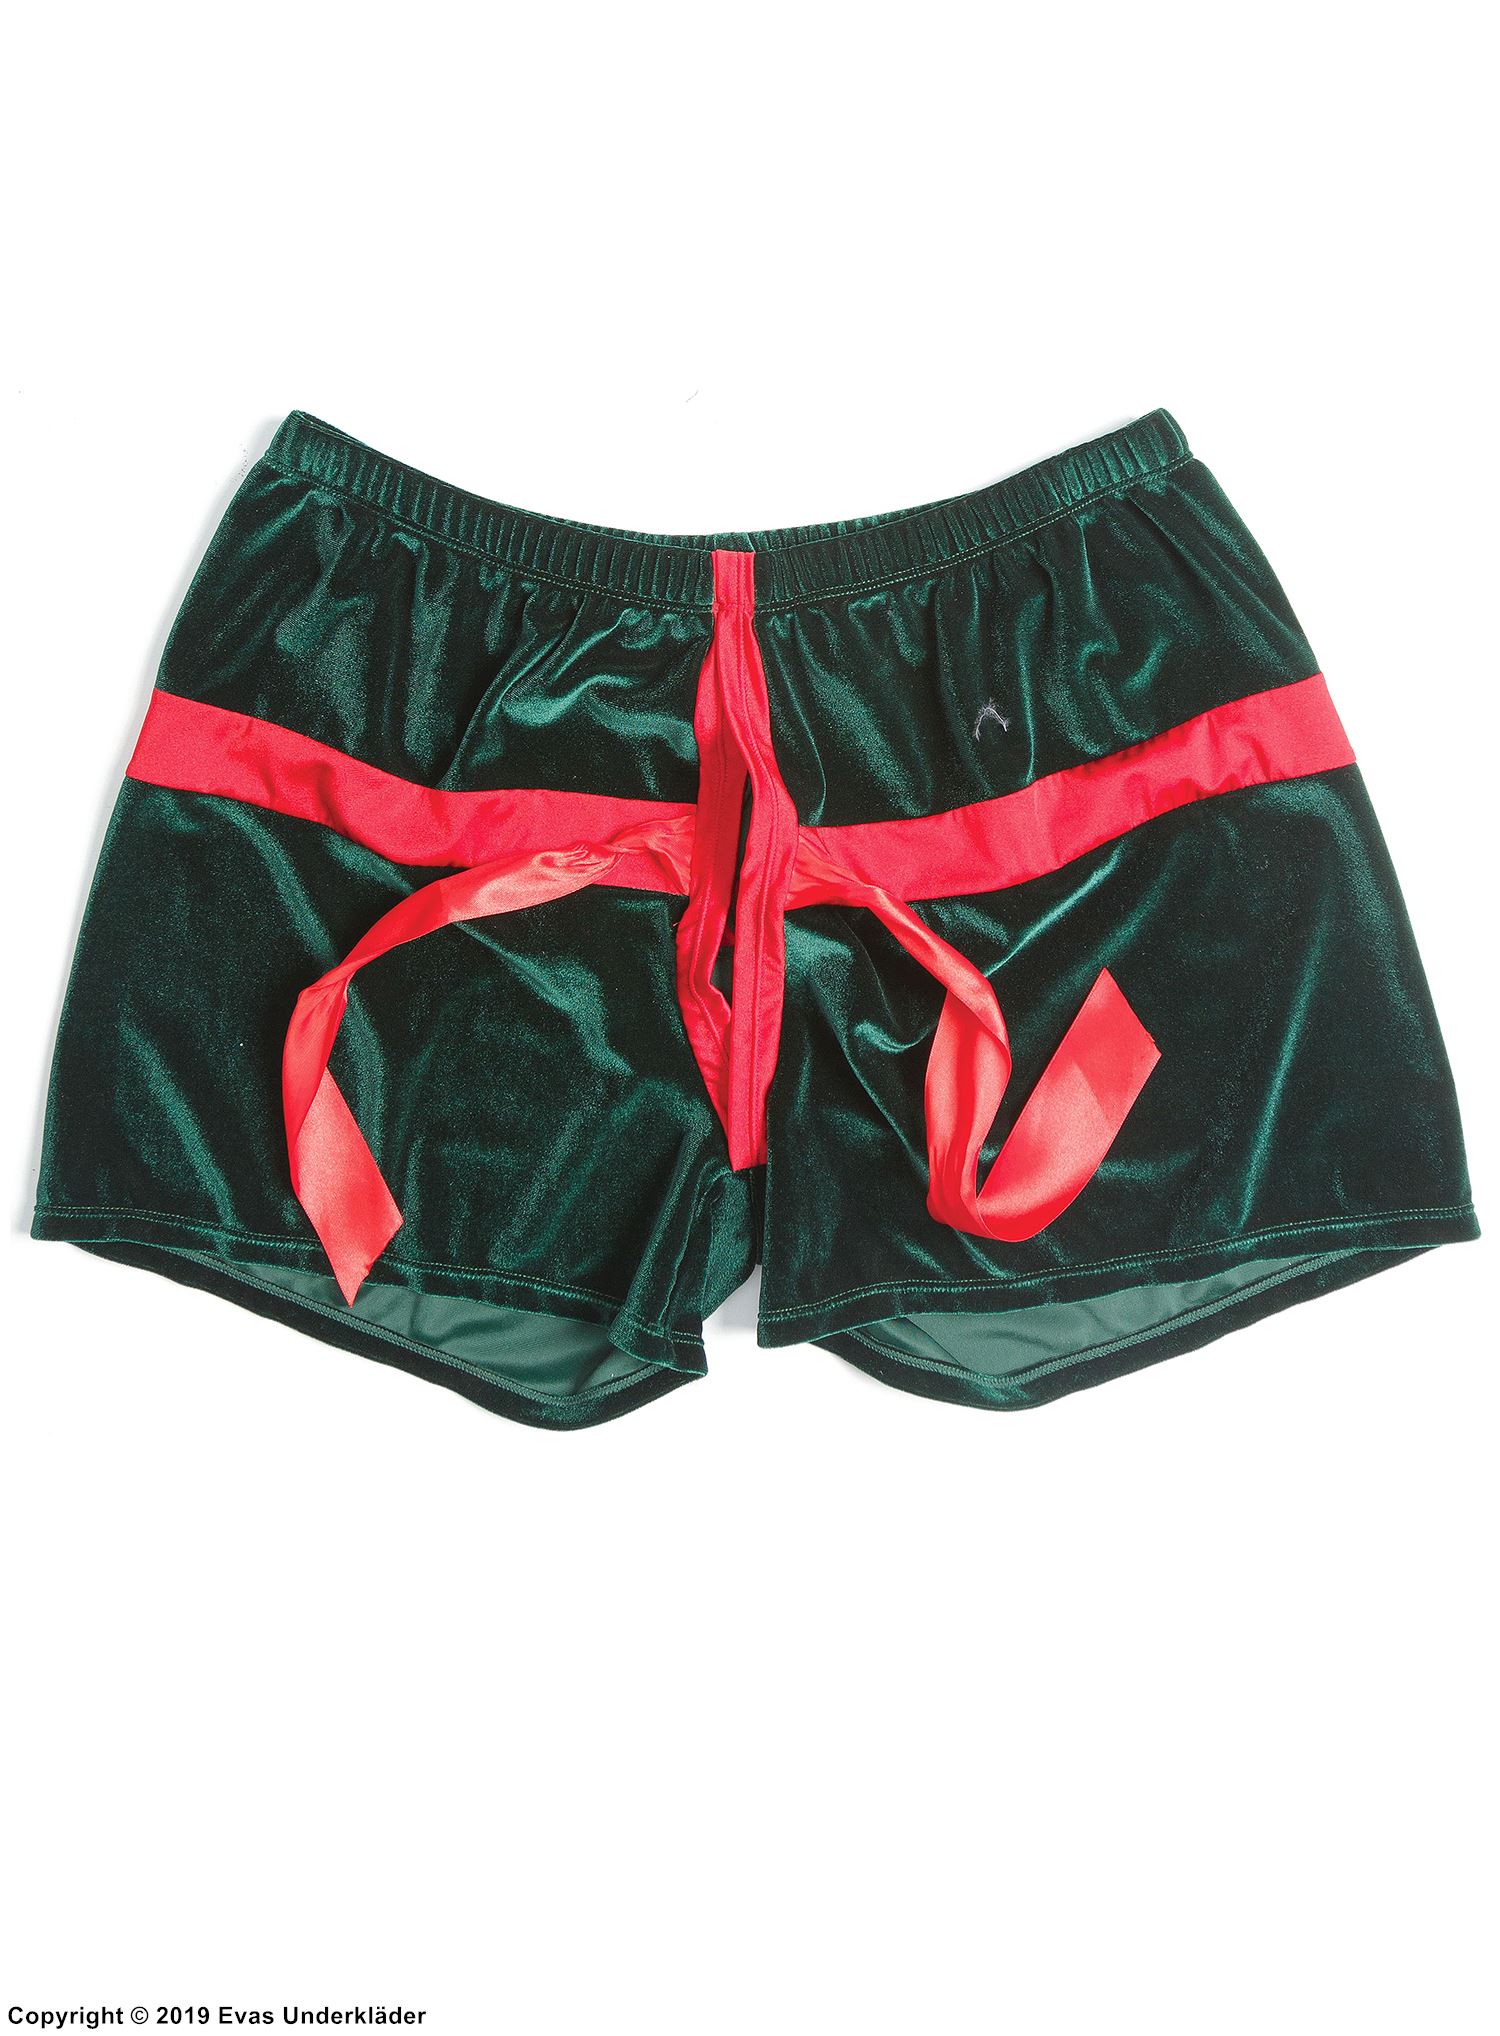 Men's boxer briefs, velvet, bow, open crotch